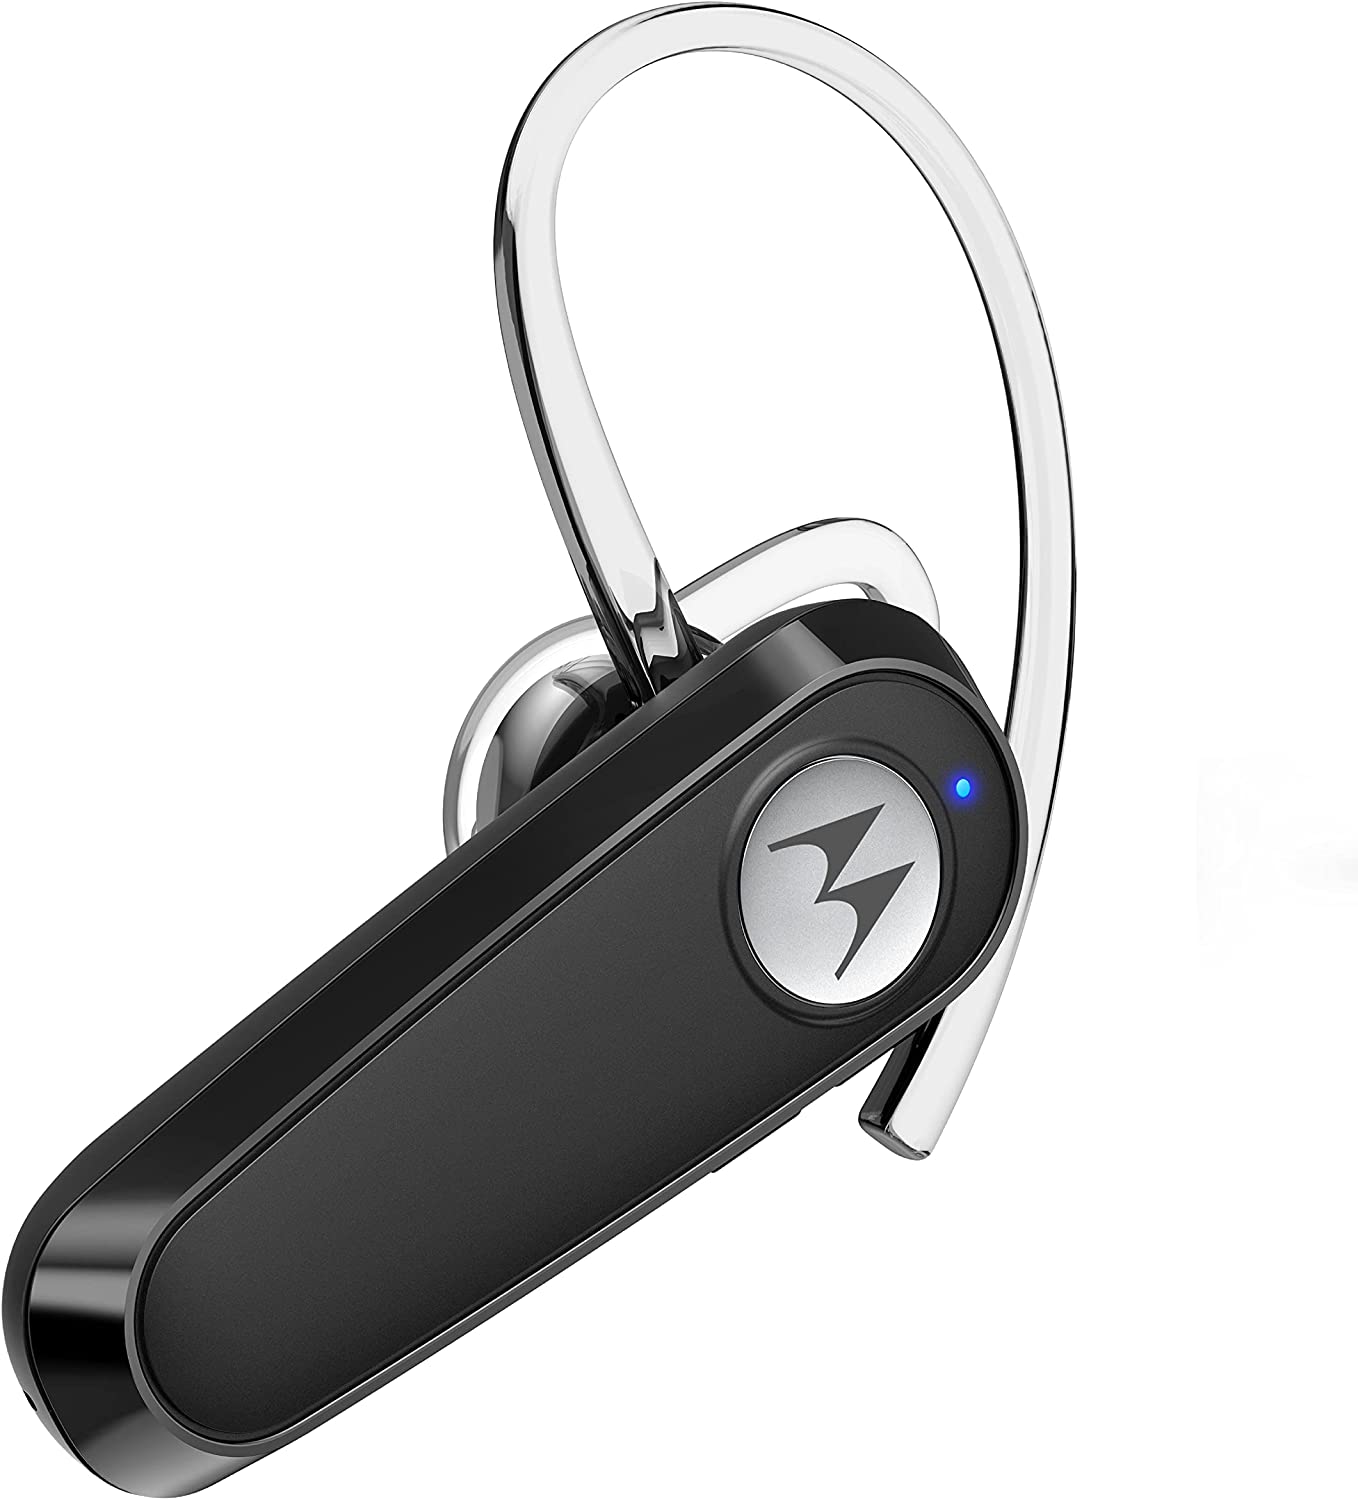 Motorola - Auriculares Bluetooth HK125 intraurales inalámbricos overol para llamadas de voz claras, diseño ligero y cómodo, 6.5 horas de tiempo de conversación, compatible con asistente de voz, conectividad multipunto